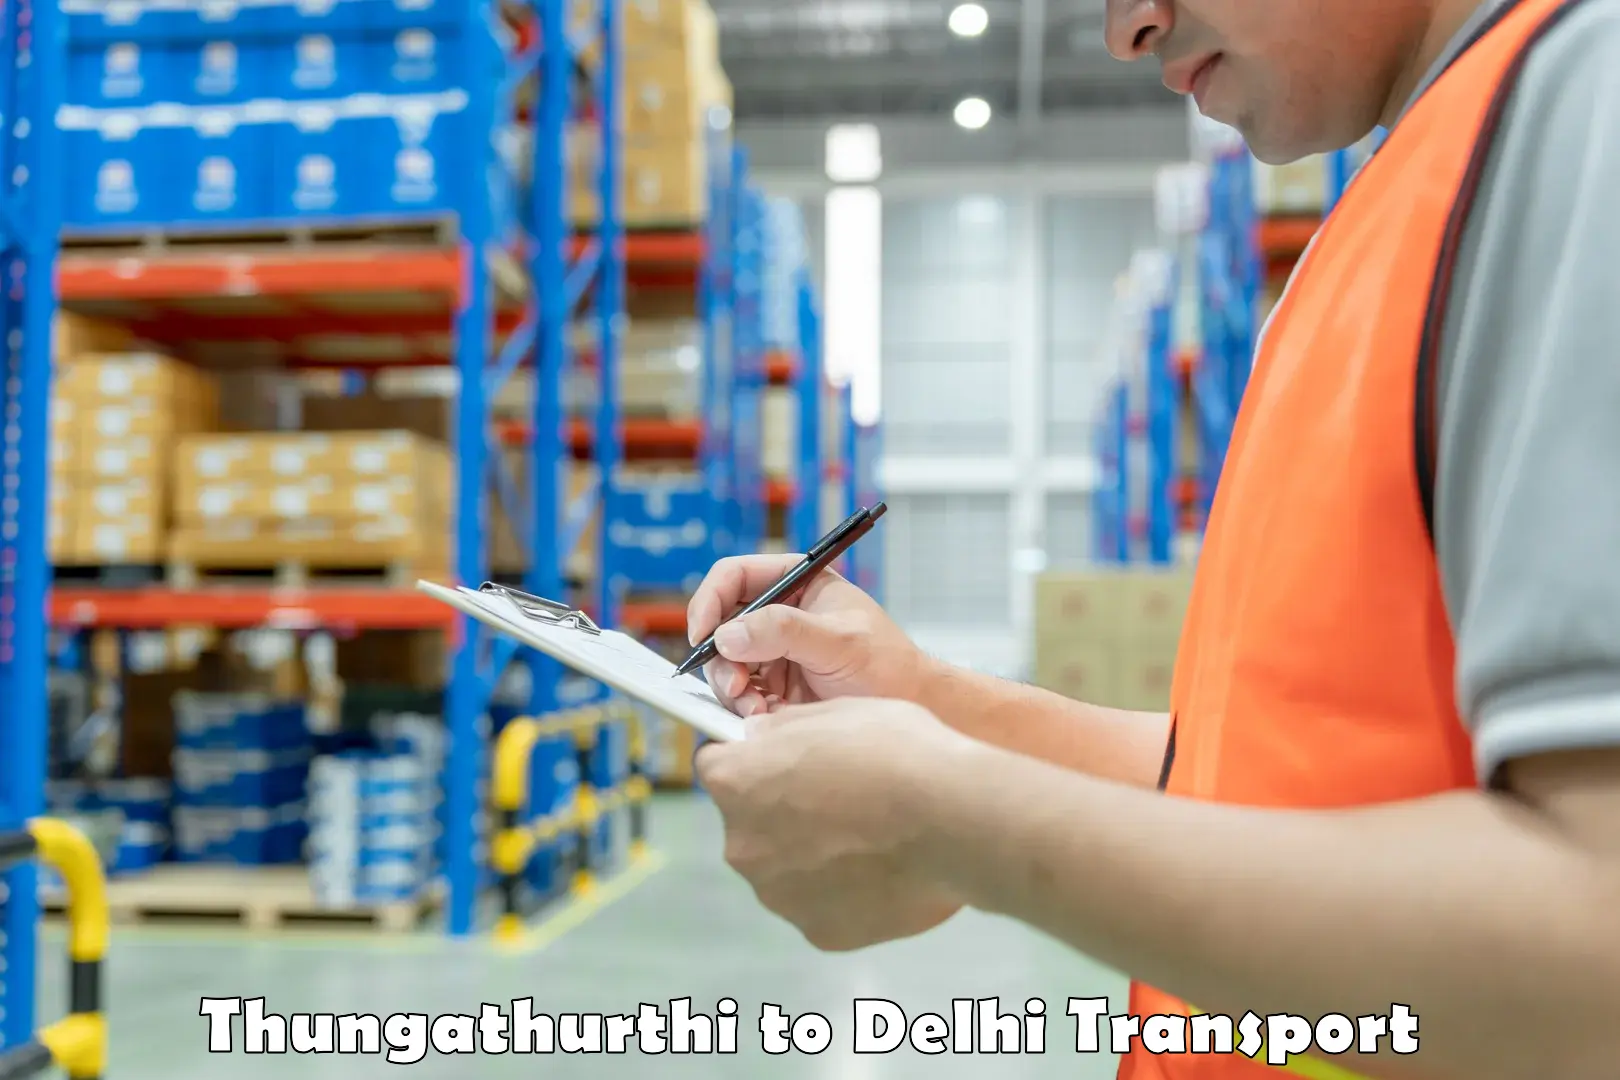 Transport shared services Thungathurthi to Ashok Vihar